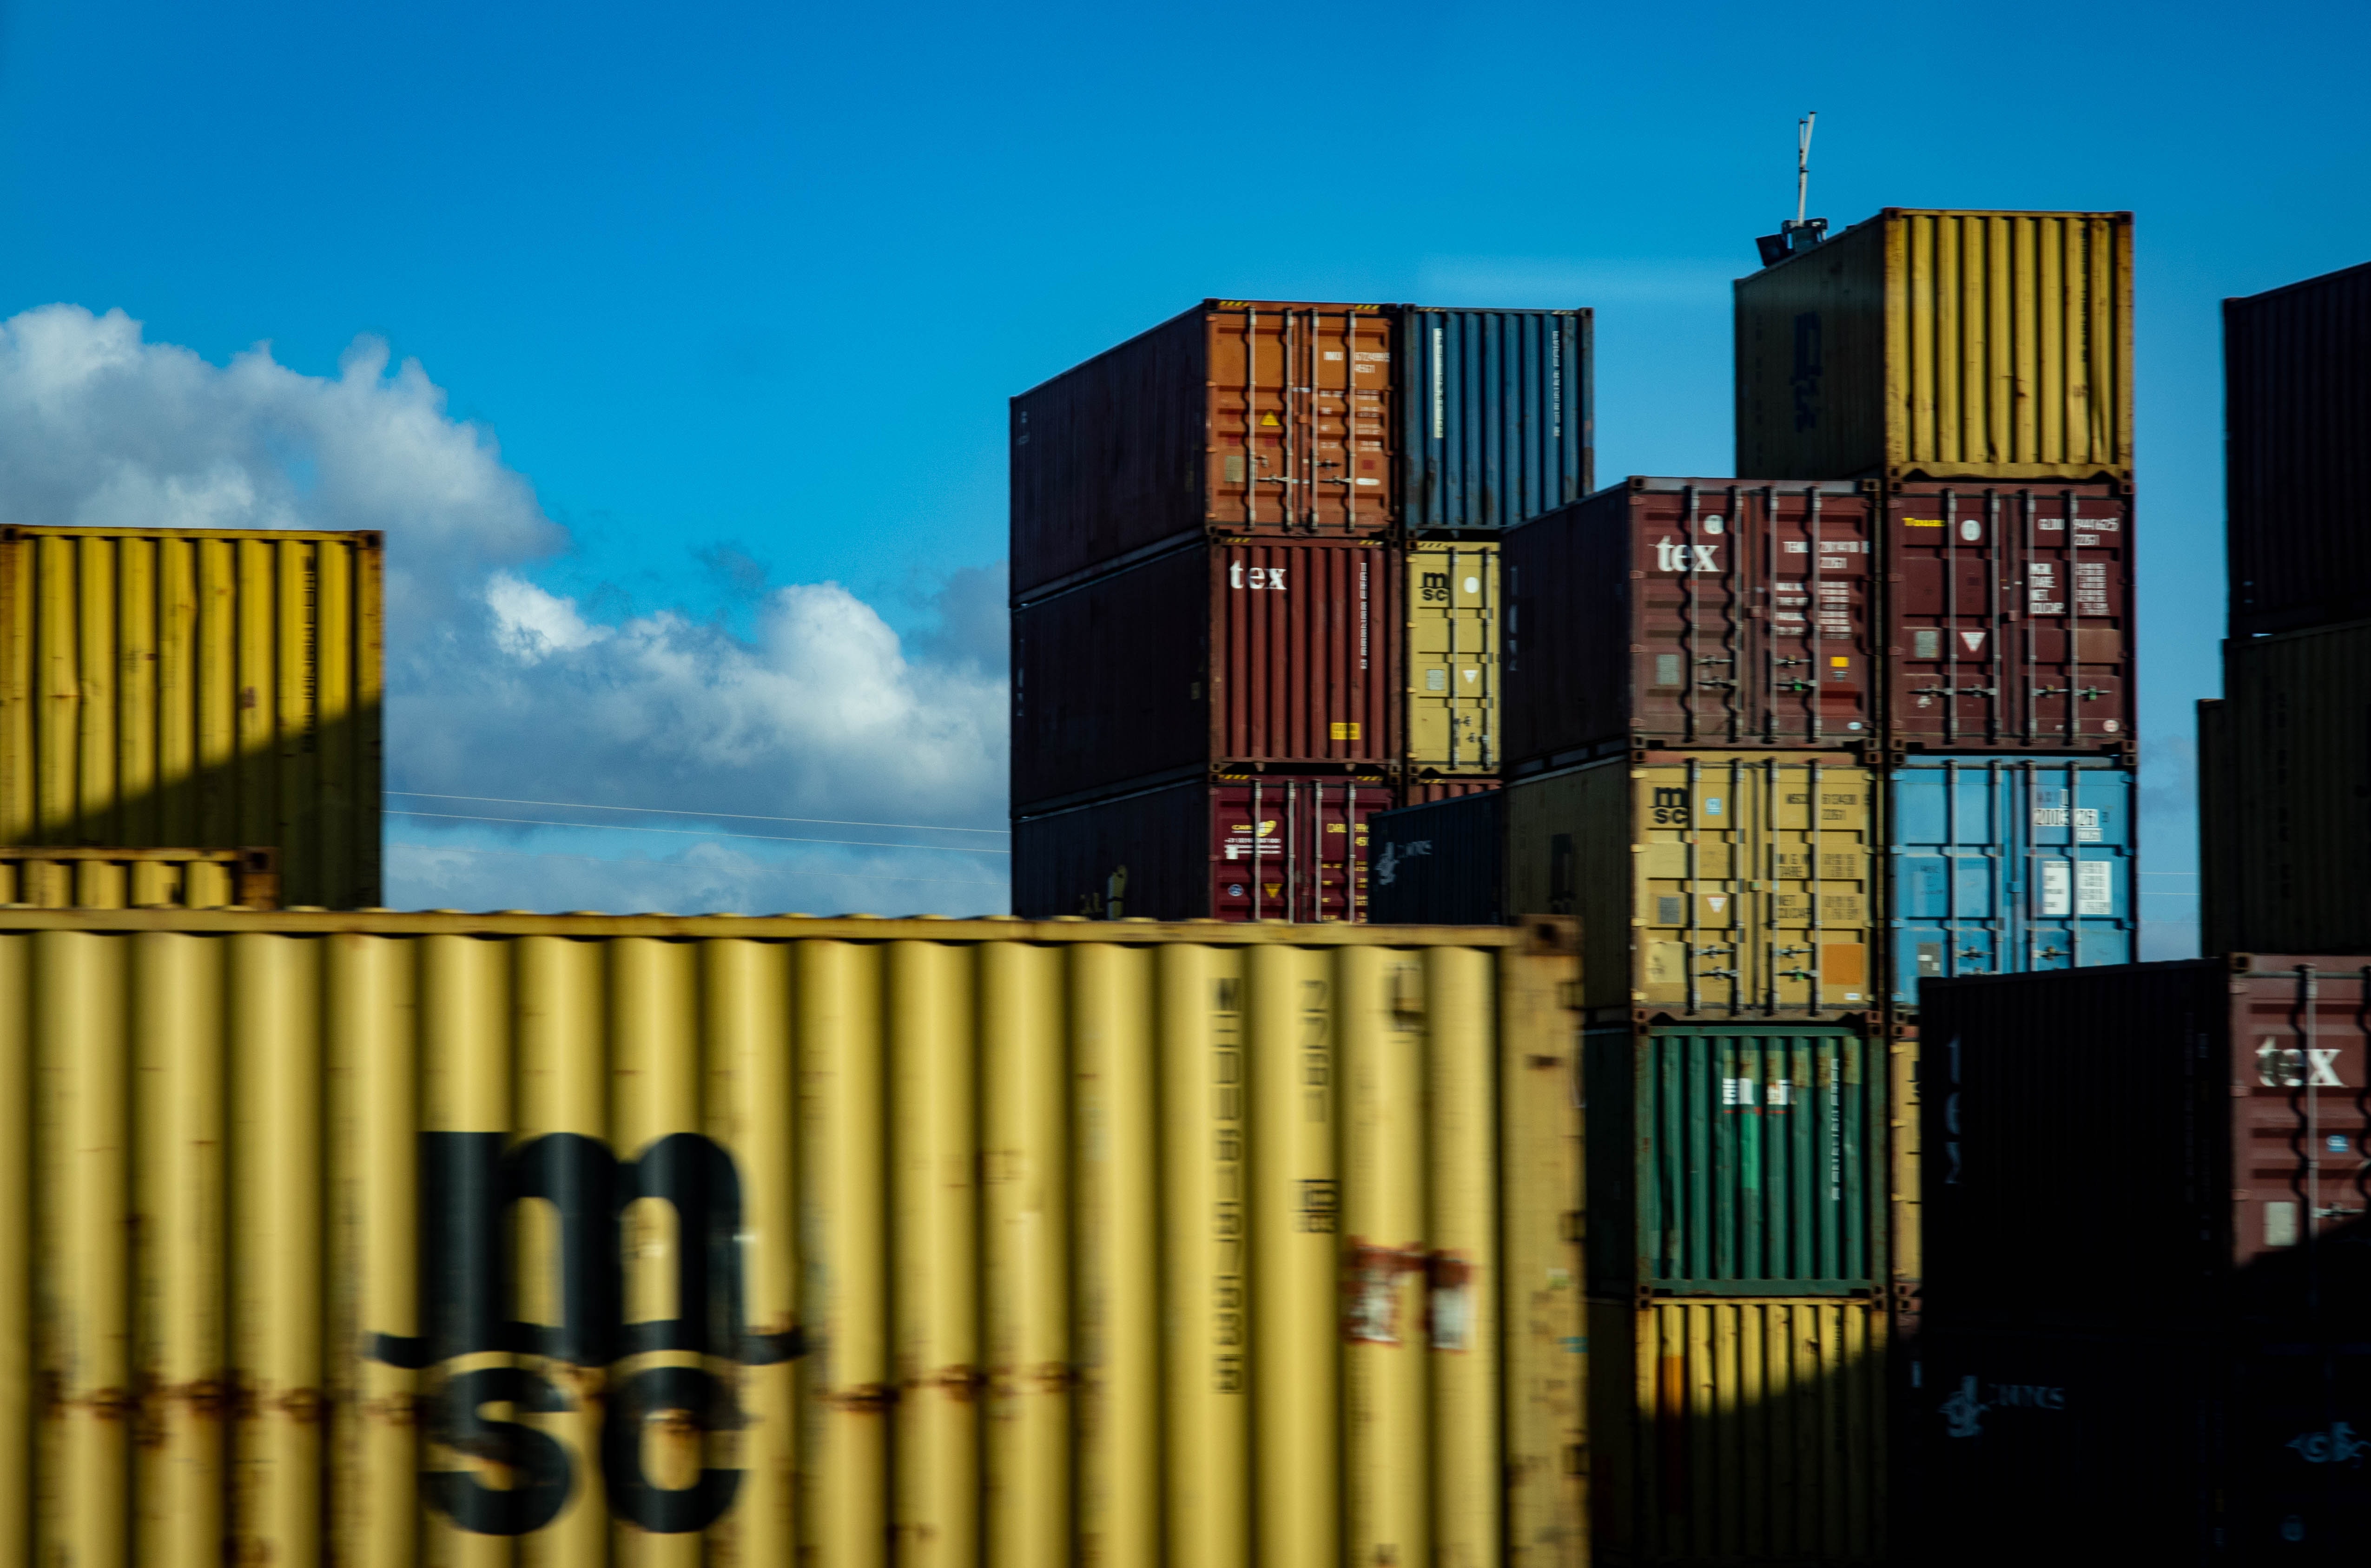 Причины и следствия дисбаланса контейнерного оборудования в мире